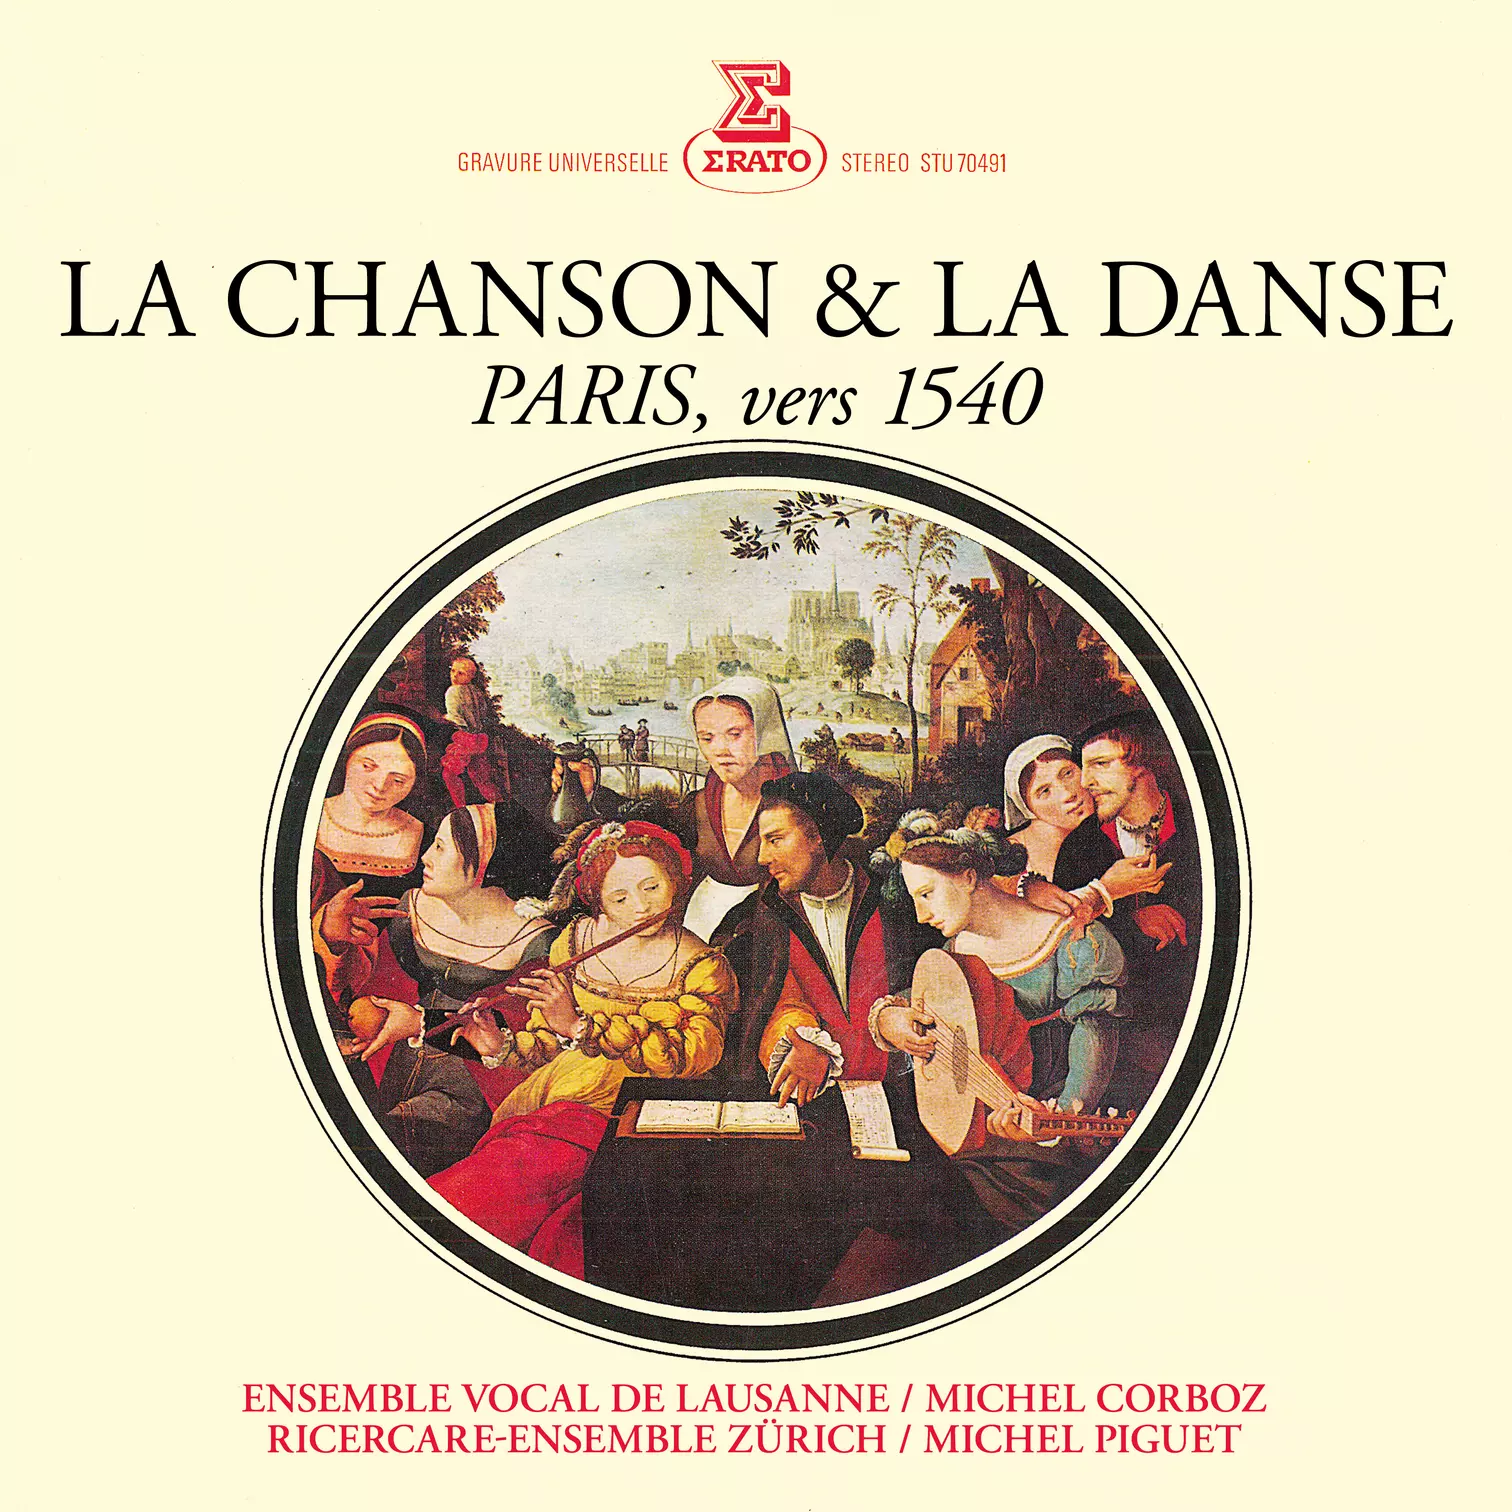 La chanson & la danse. Paris, vers 1540